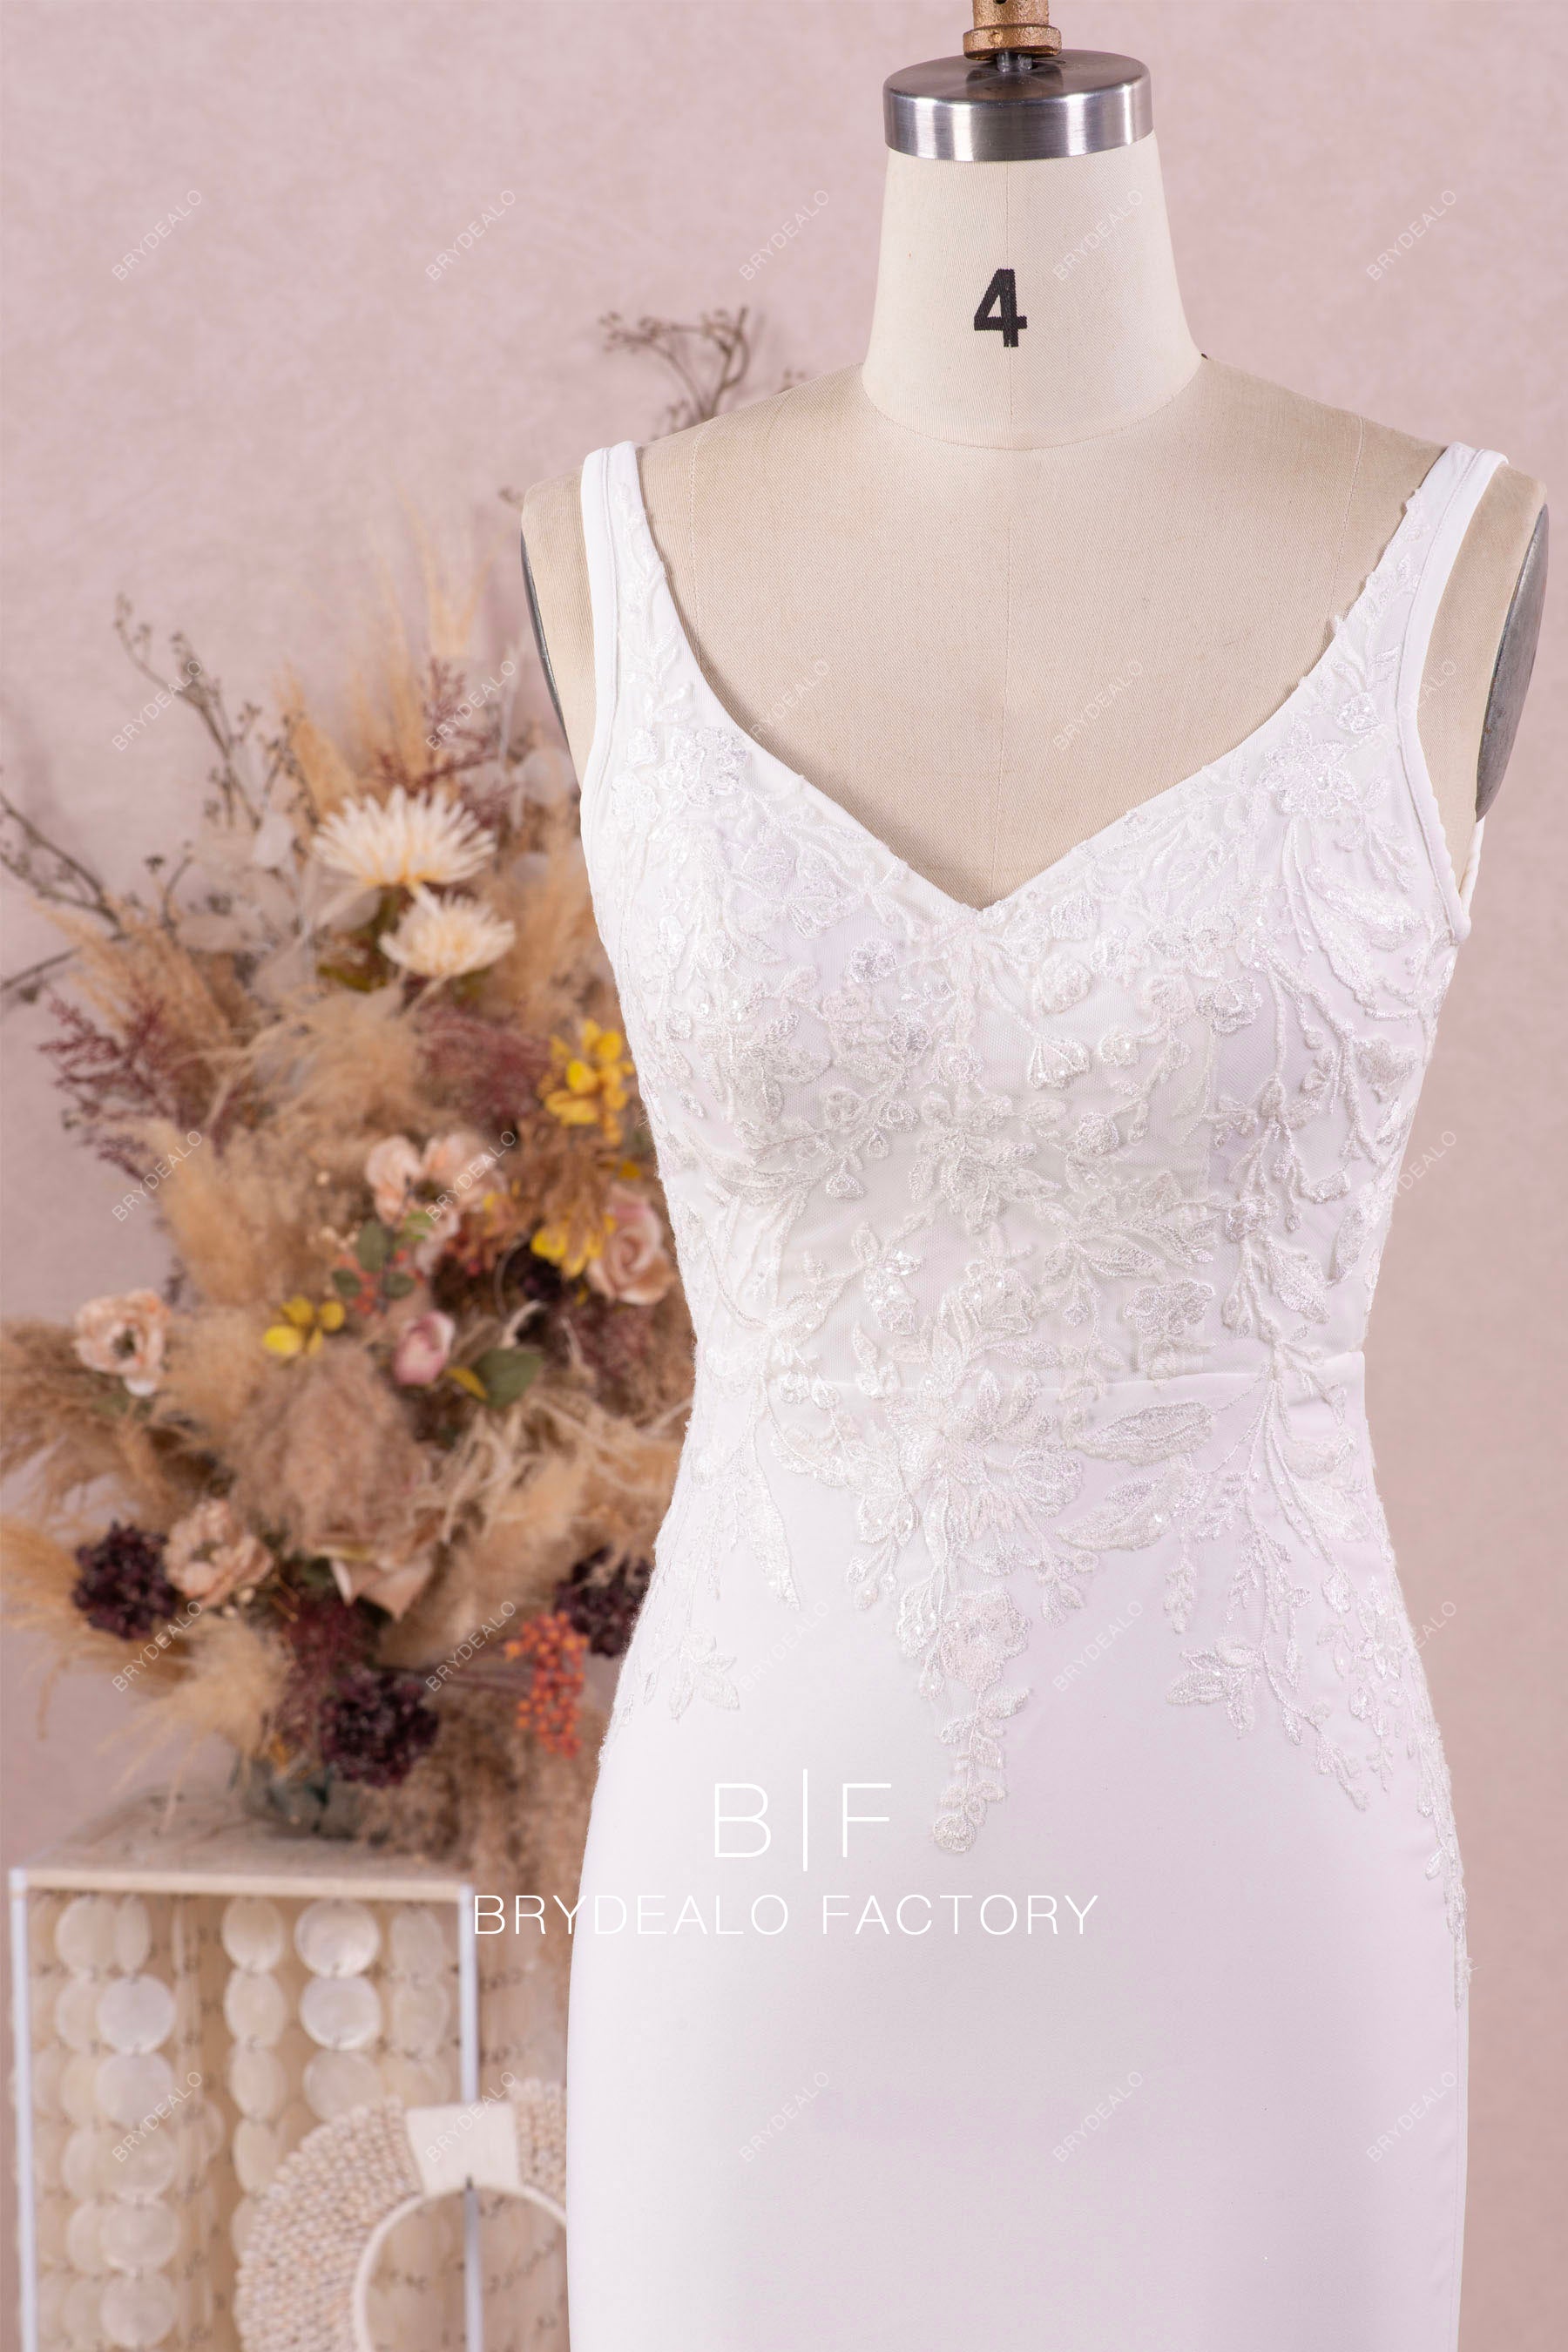 V-neck sleeveless wedding dress